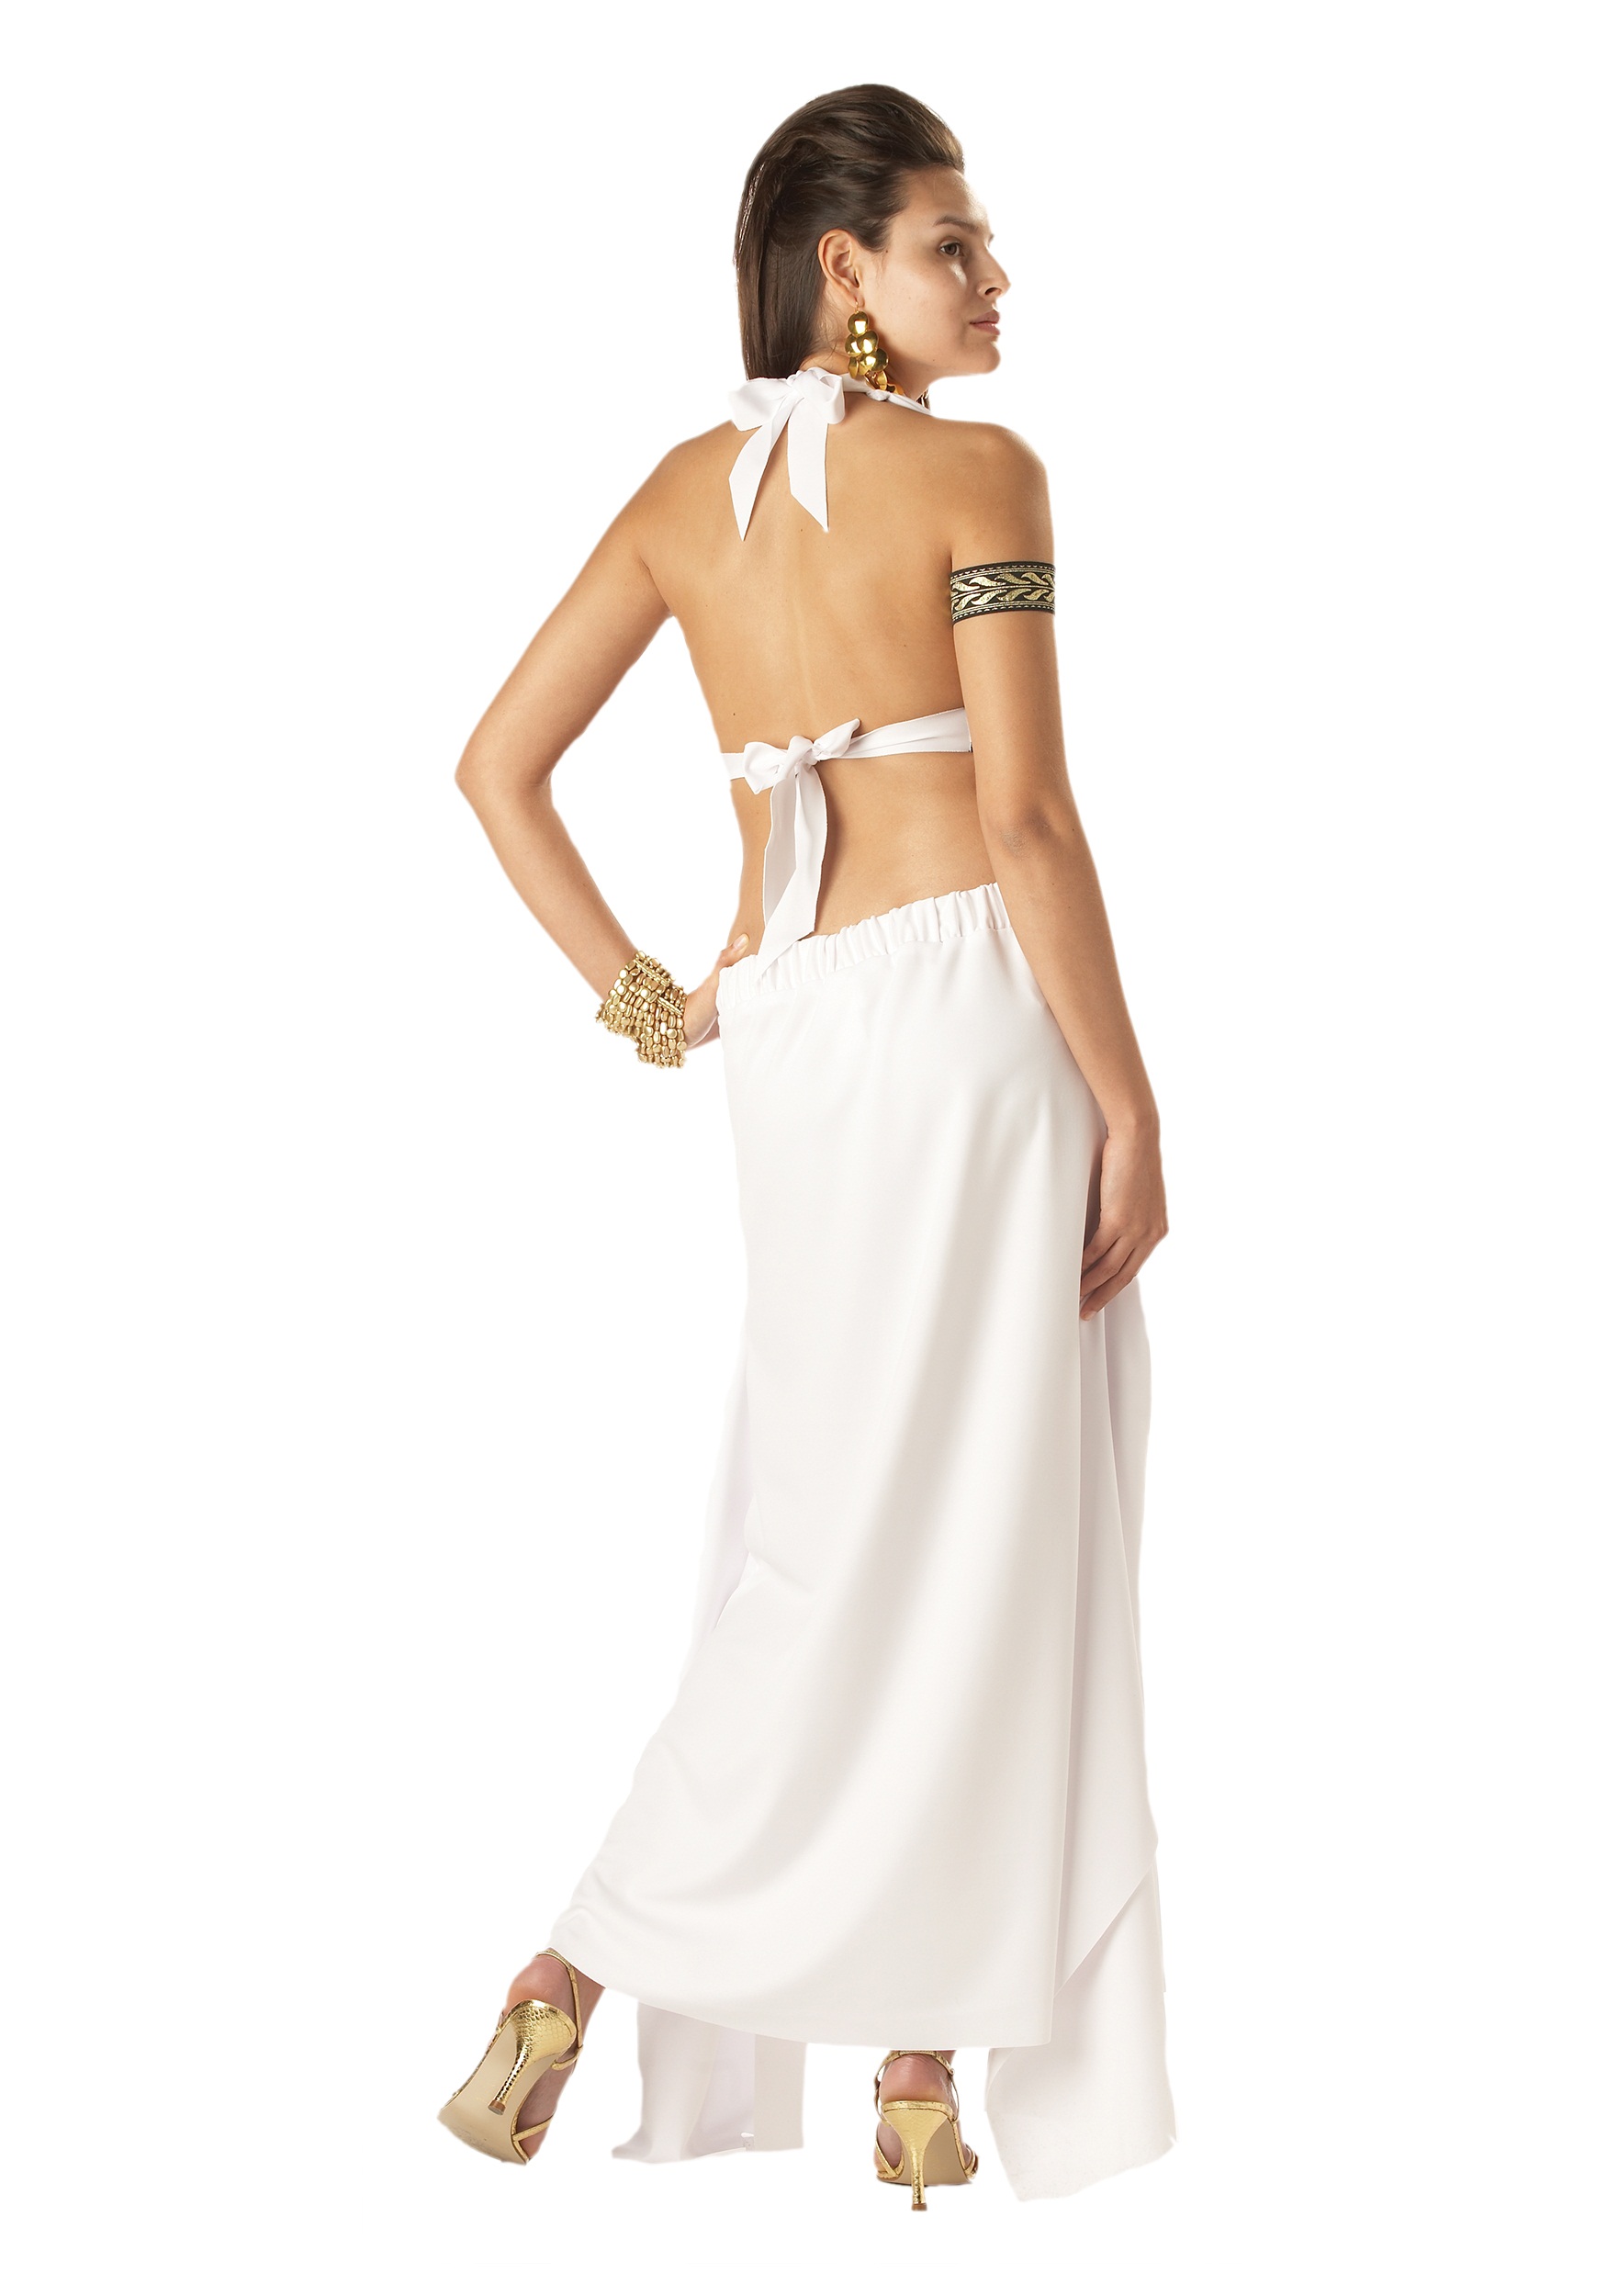 Spartan Queen Fancy Dress Costume , Ancient Greek Fancy Dress Costume